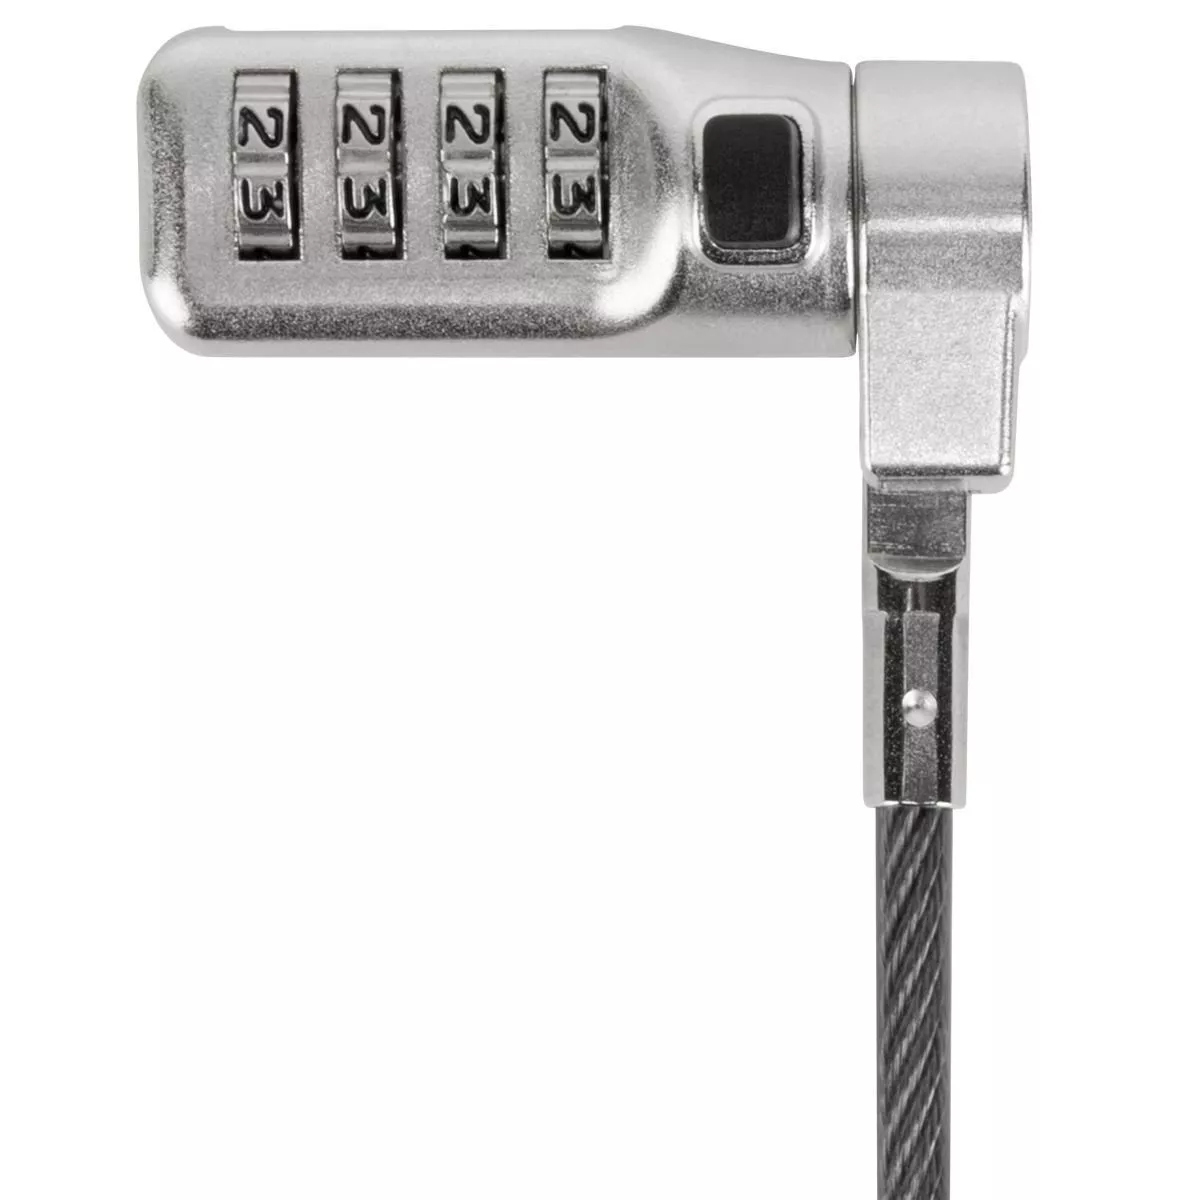 Vente TARGUS DEFCON 3-in-1 Lock Fixed Combination Retail Lock Targus au meilleur prix - visuel 4